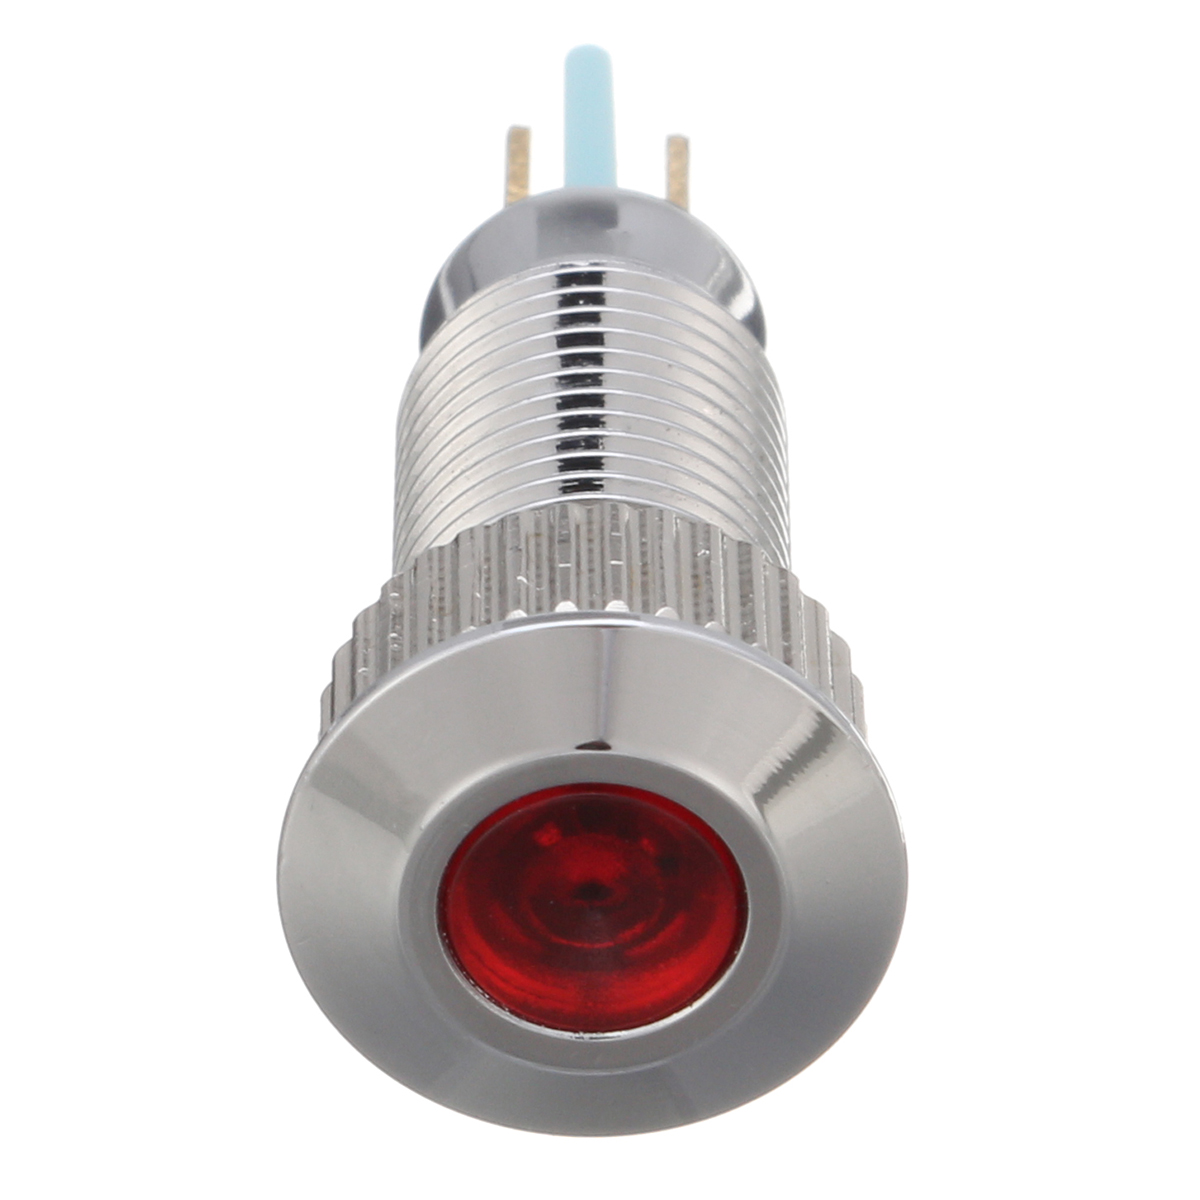 12V Metal 8mm LED Panel Dash Lamp Warning Light Indicator Waterproof